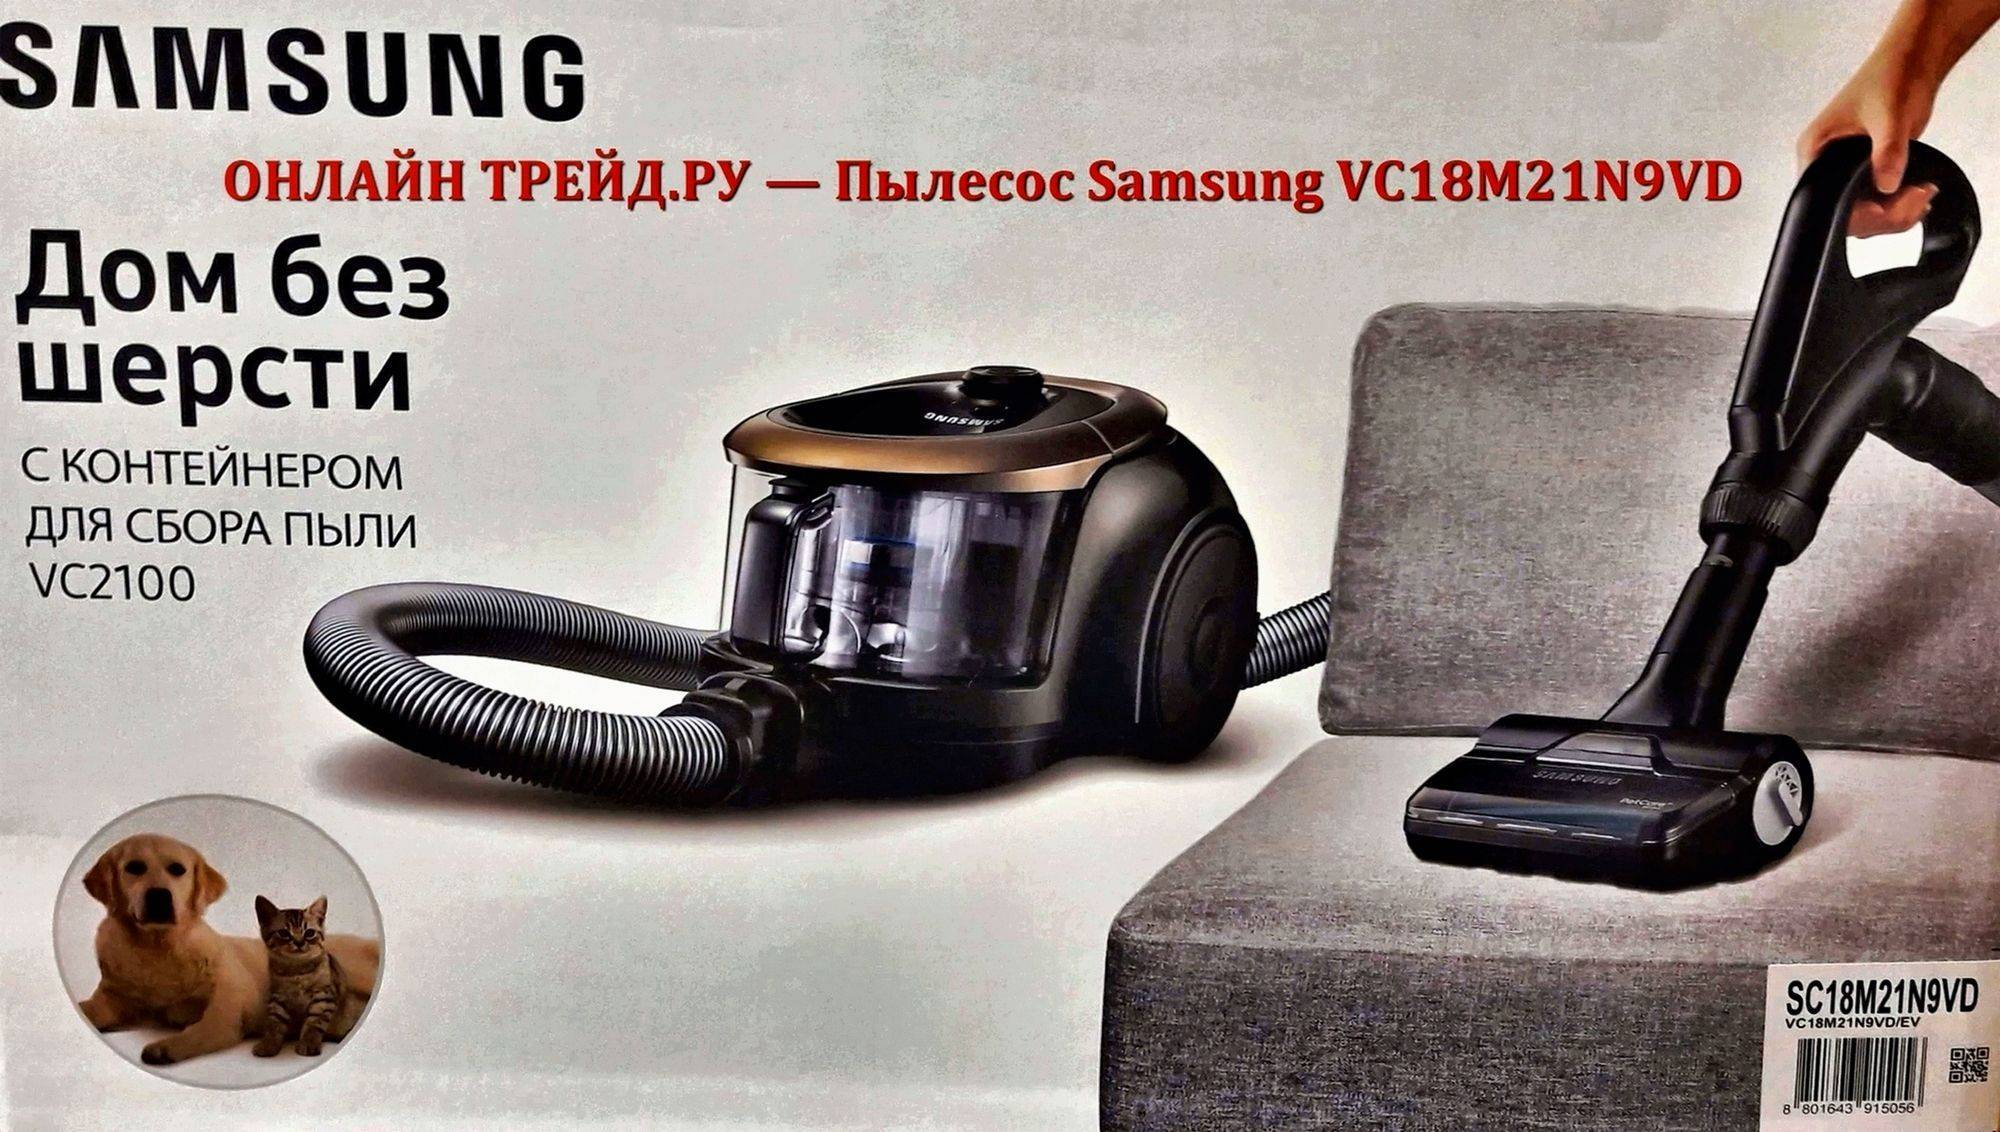 Samsung пылесос моющий - обзор моделей, достоинств и недостатков домашних пылесосов